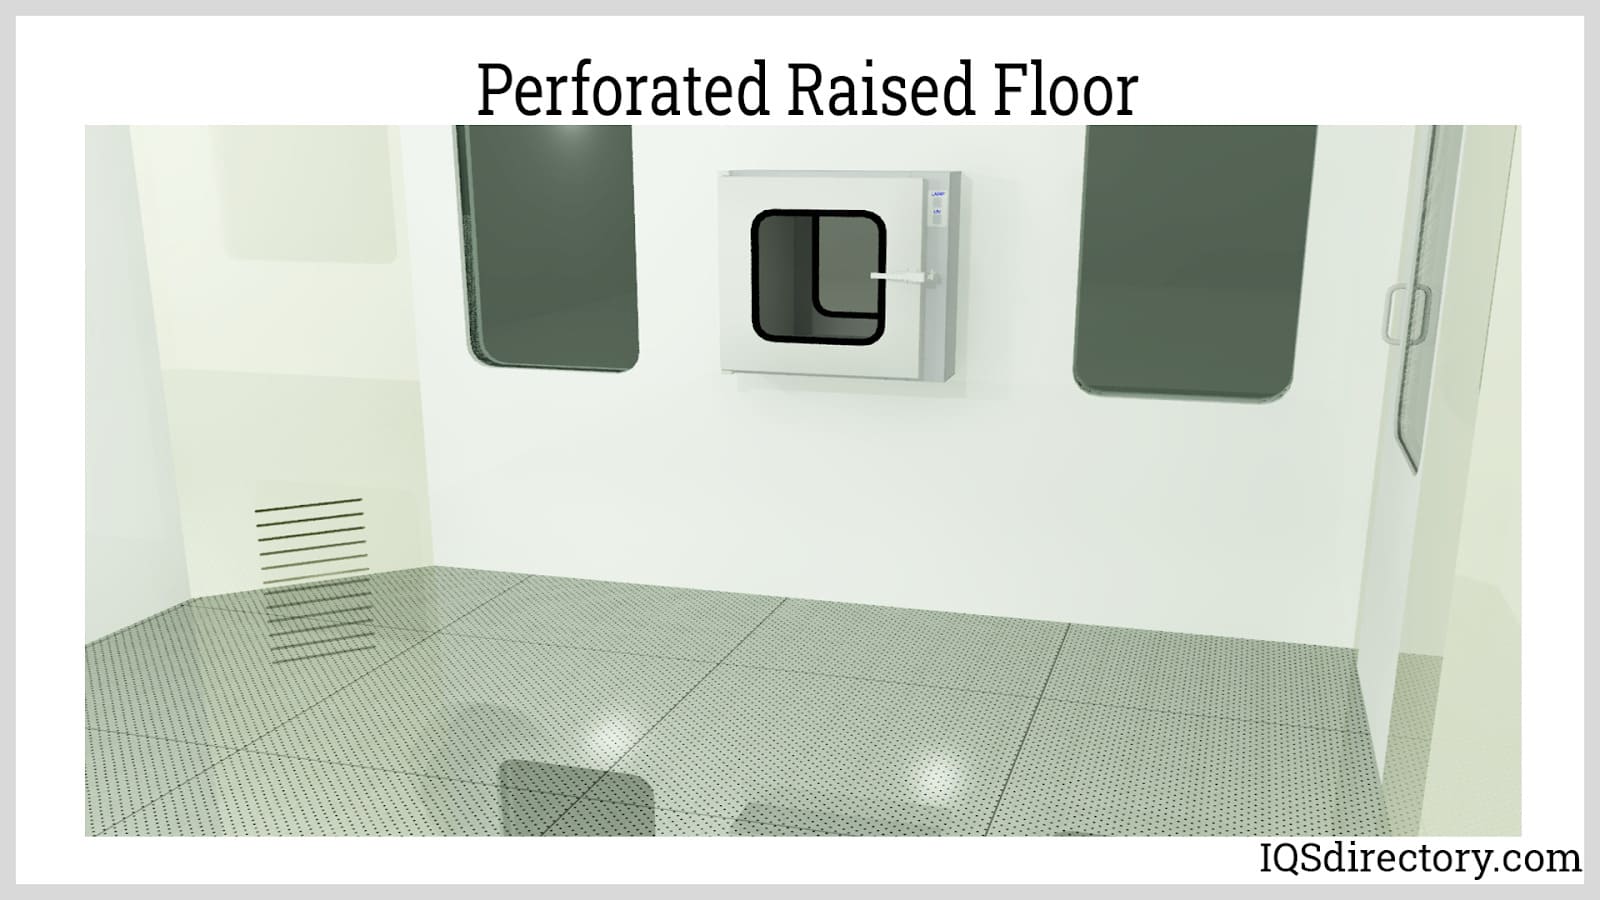 Perforated Raised Floor